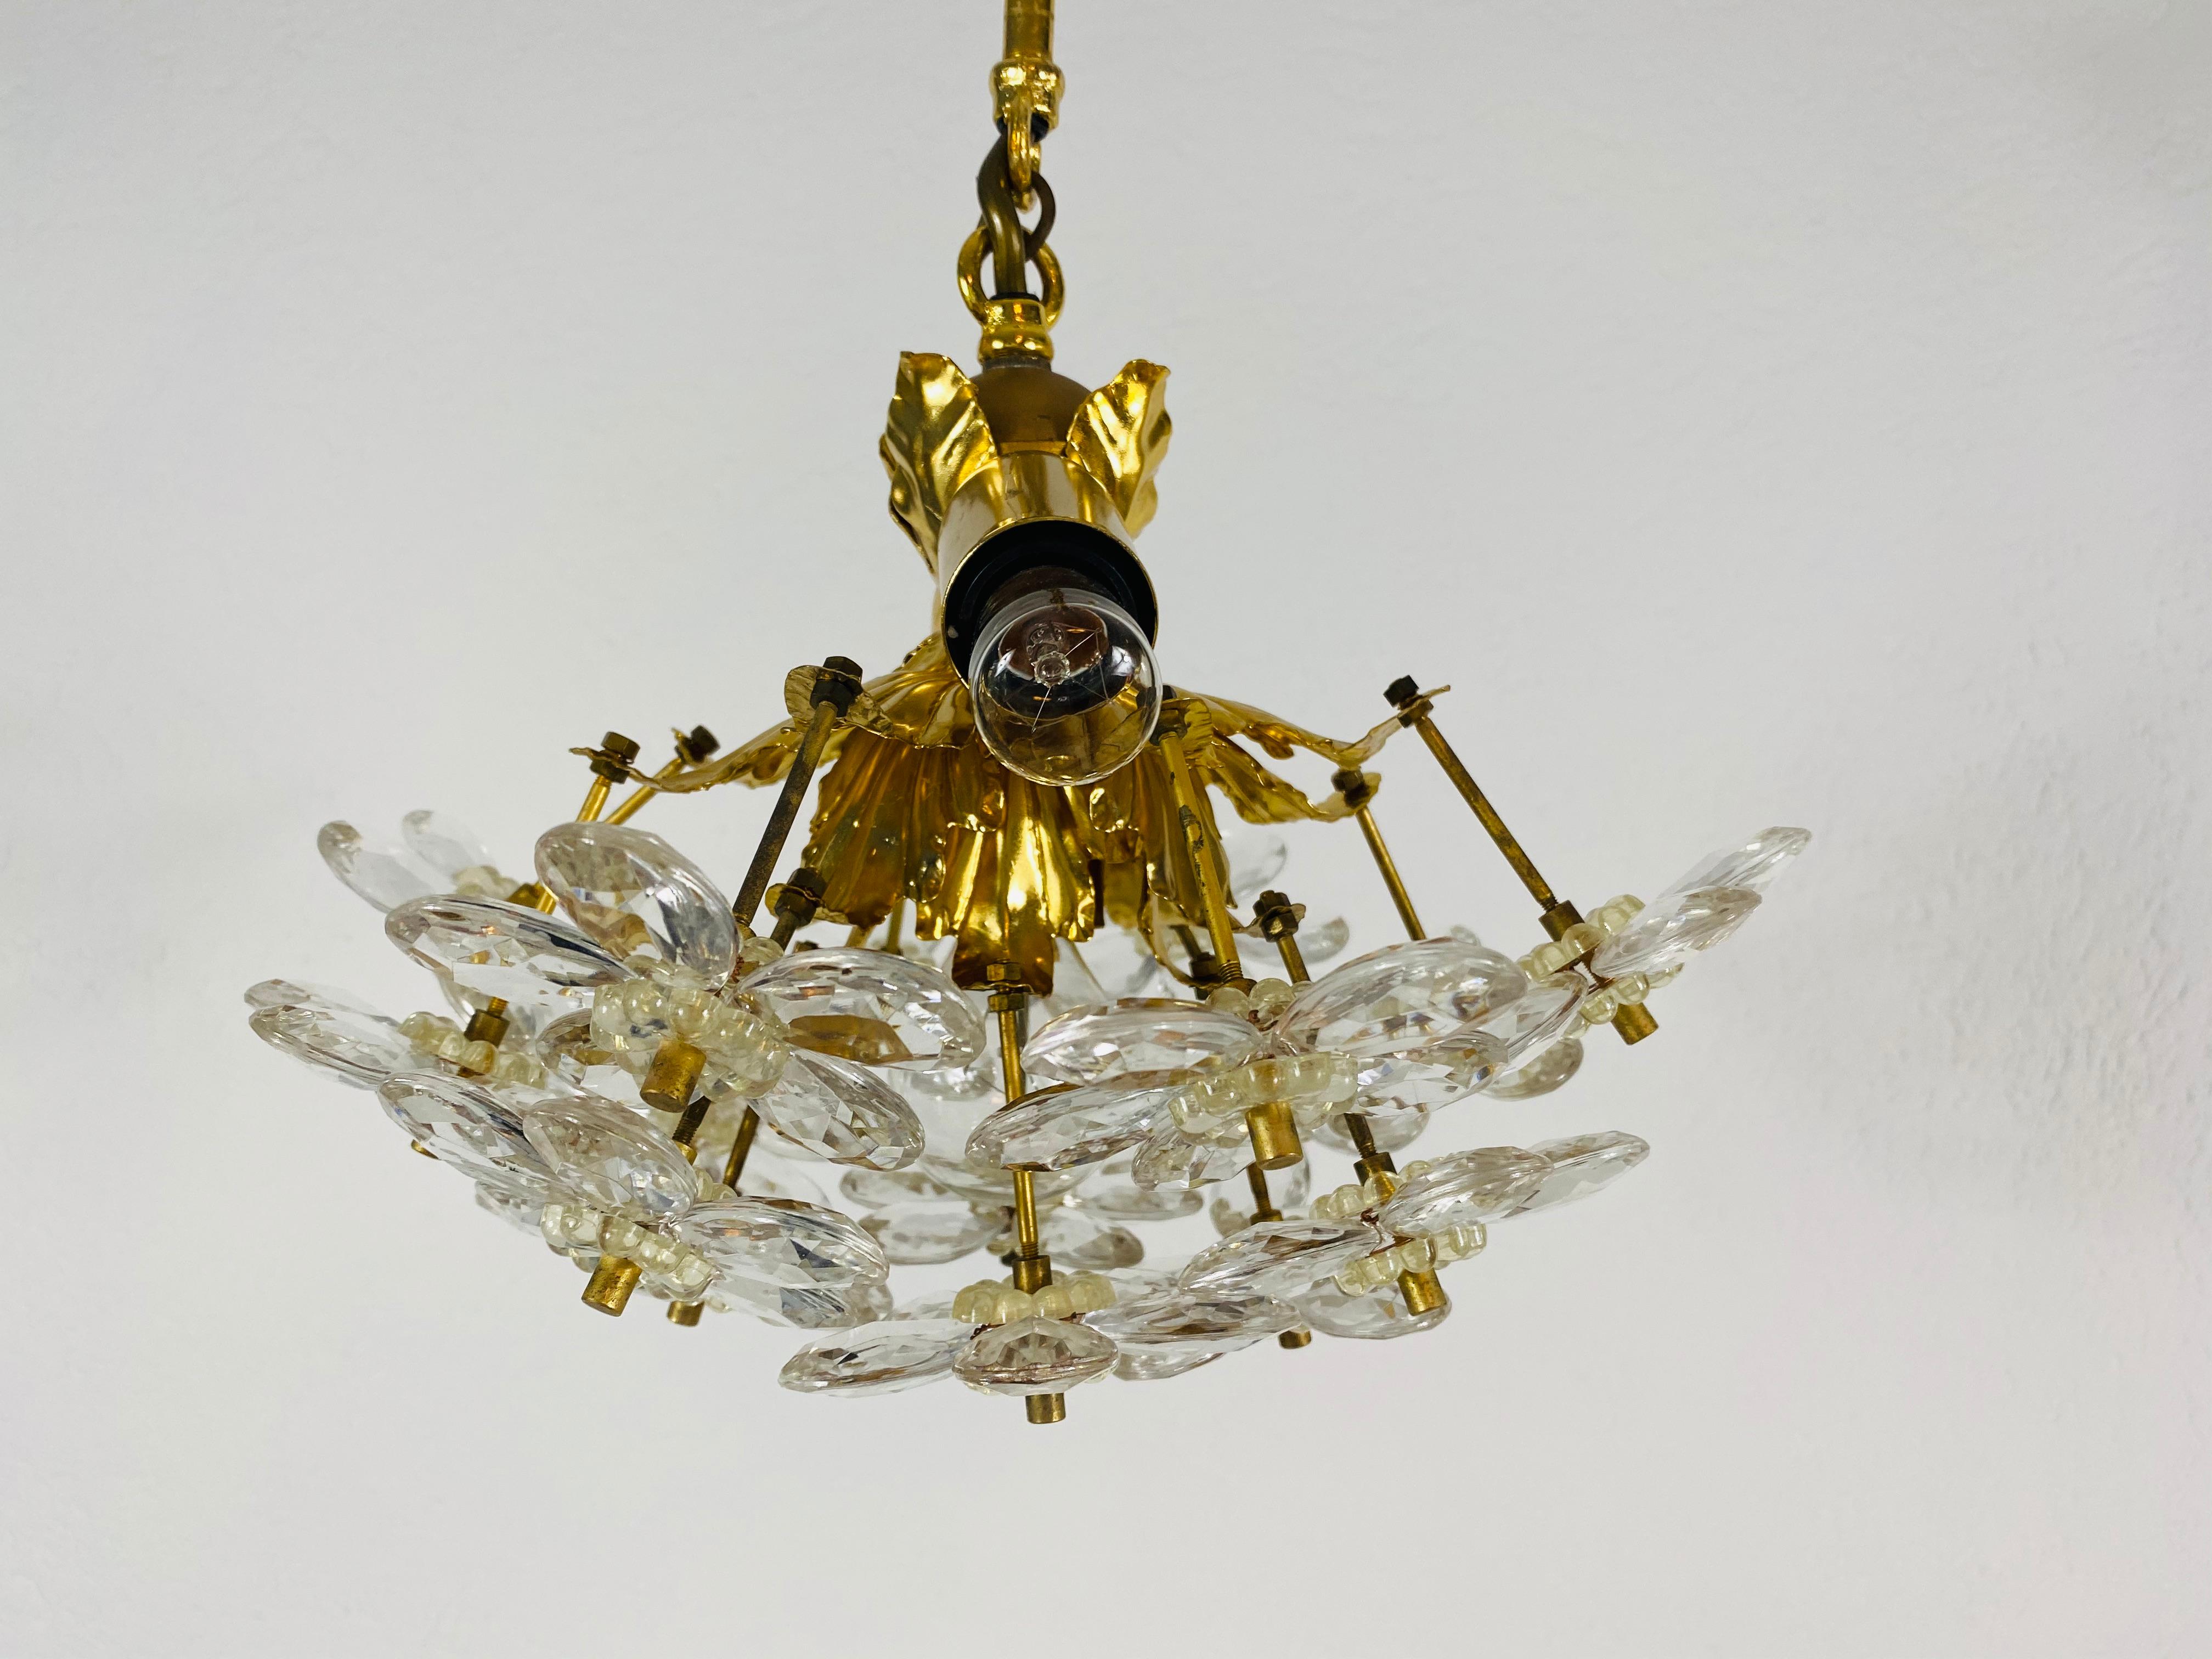 Un lustre extraordinaire de Palwa, fabriqué en Allemagne dans les années 1960. La lampe a un design très élégant. Il est réalisé dans la période de Hollywood Regency. Corps rond en laiton doré avec douilles E14. Le corps est entouré de cristaux très